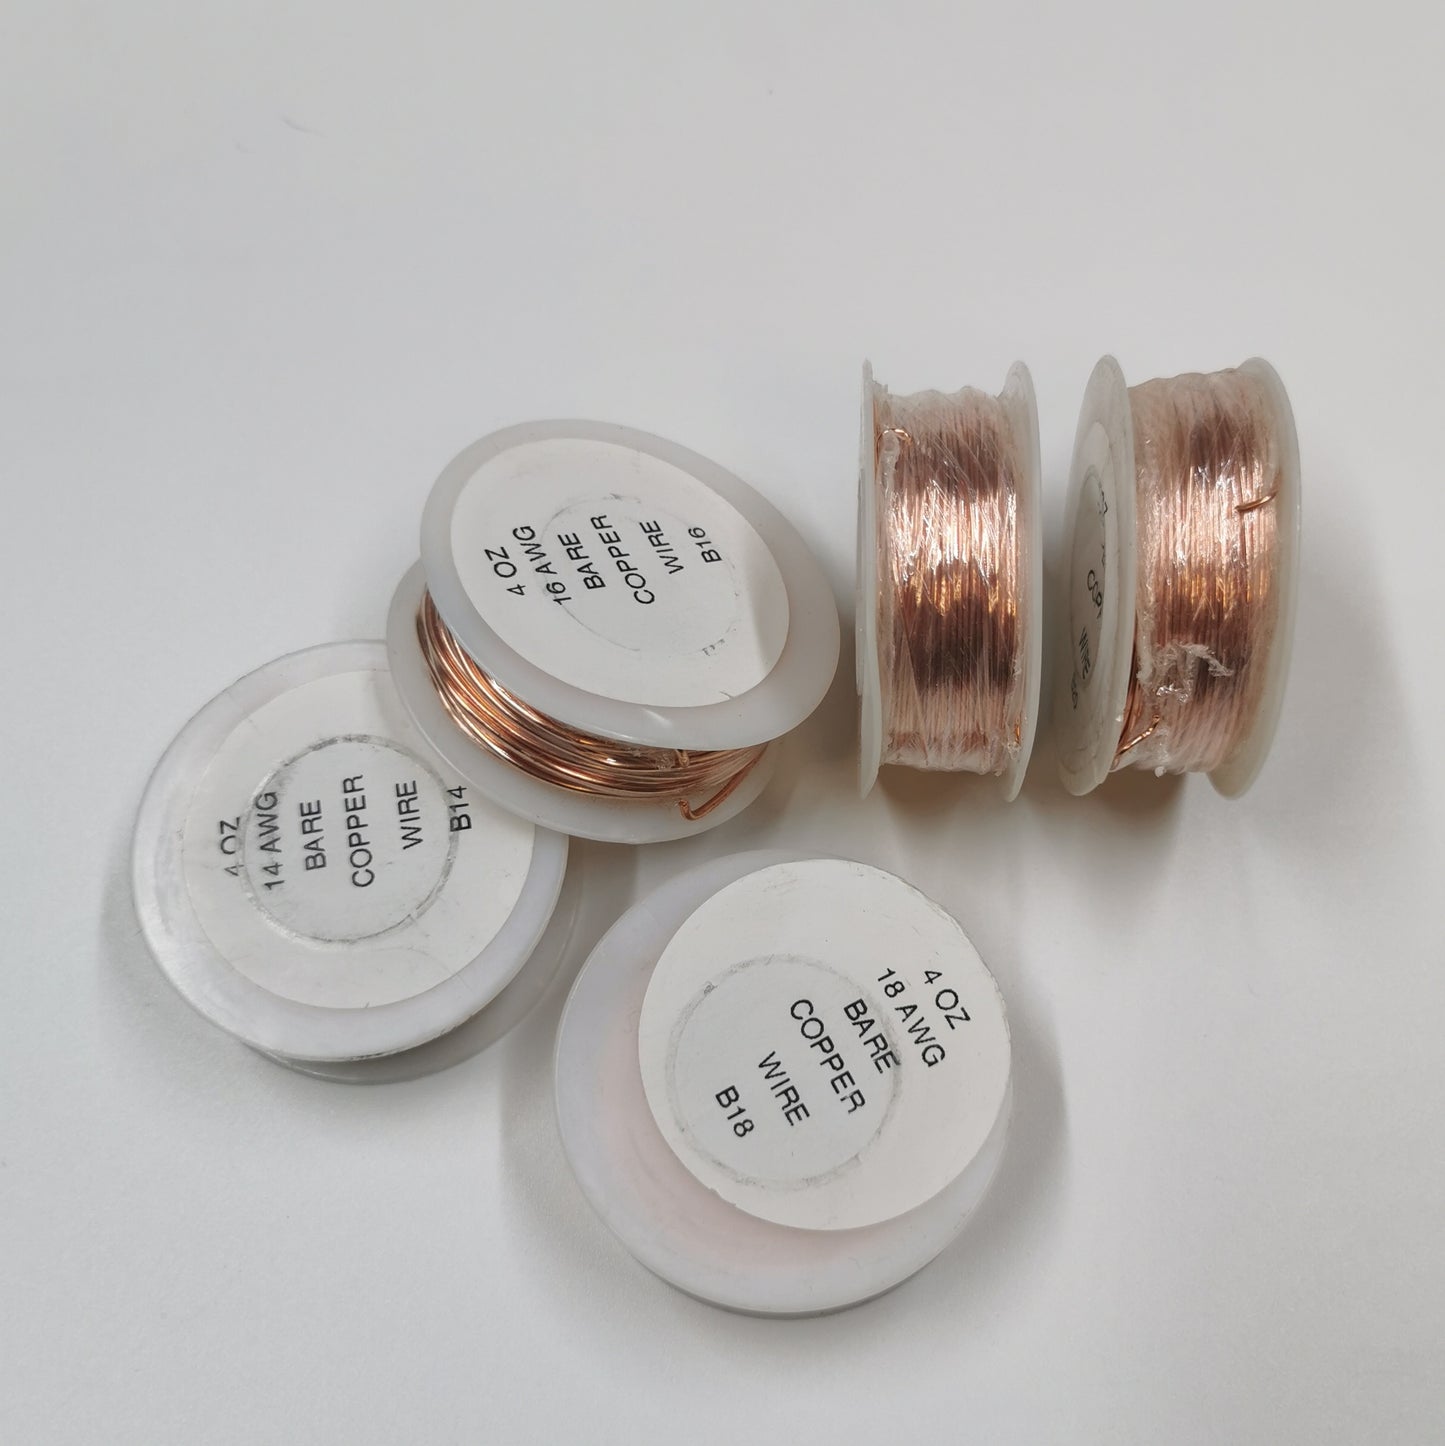 Bare copper wire spools